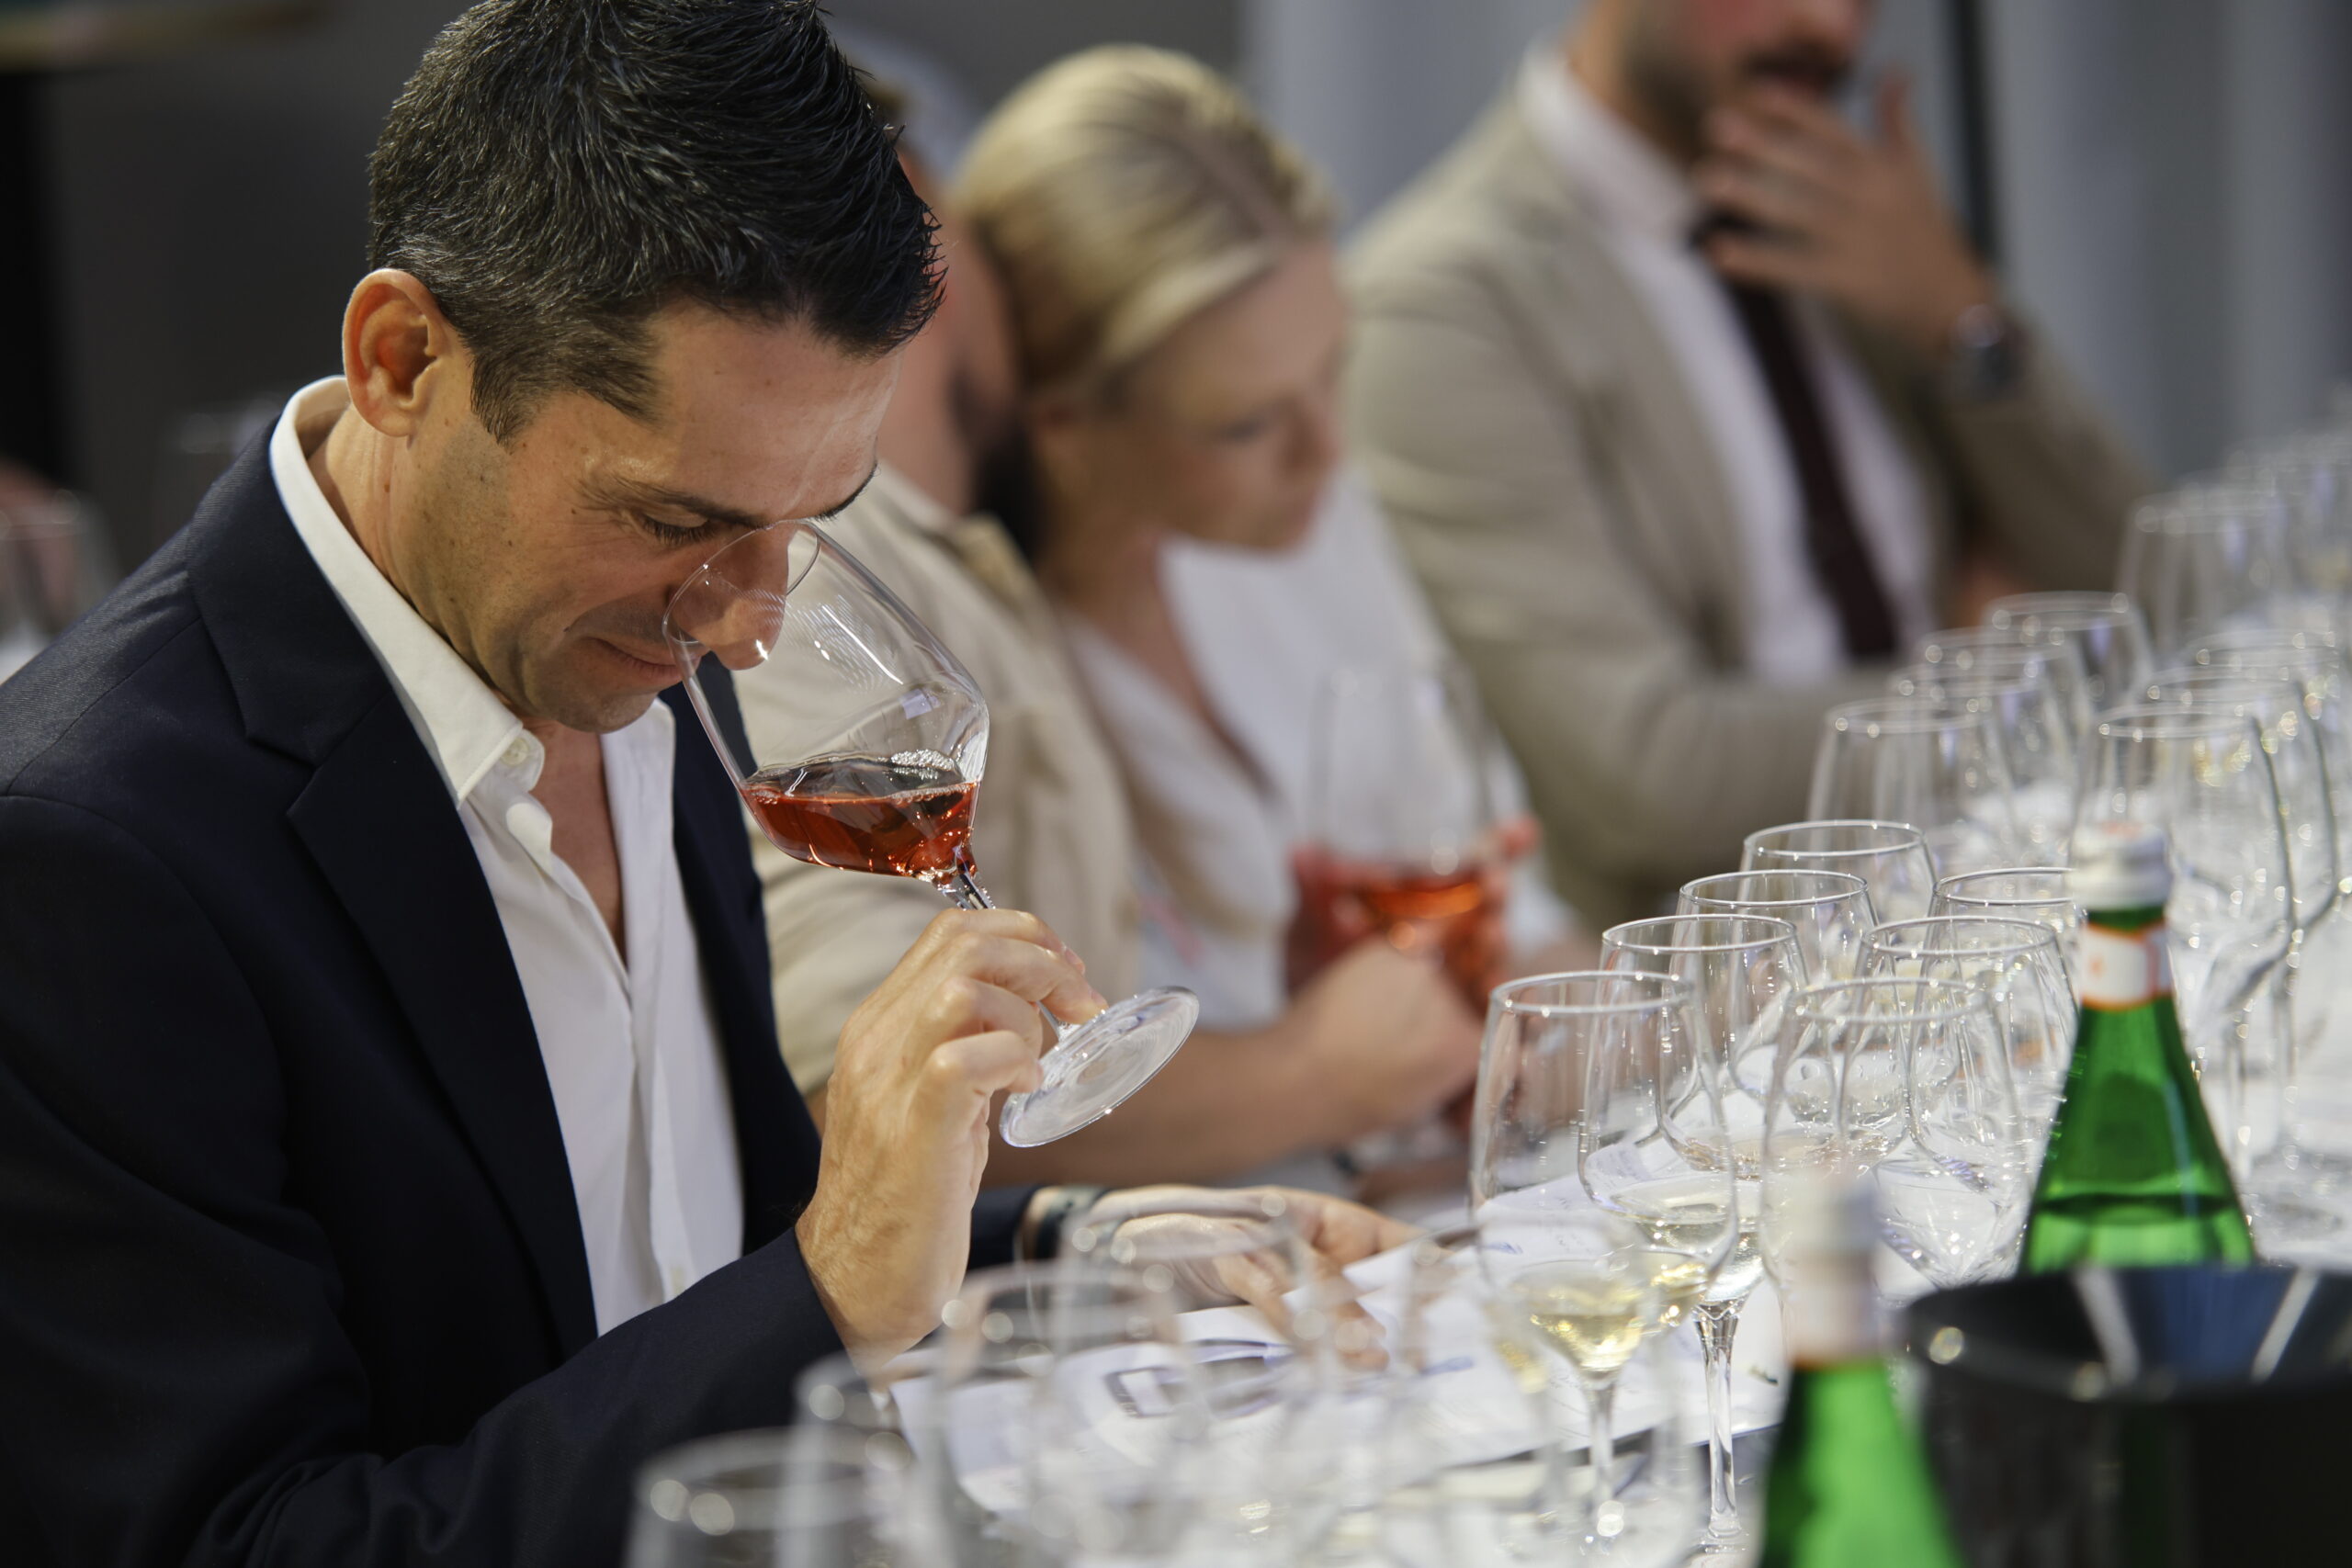 Argea gruppo vinicolo privato leader del vino italiano 2022, foto da comunicato stampa